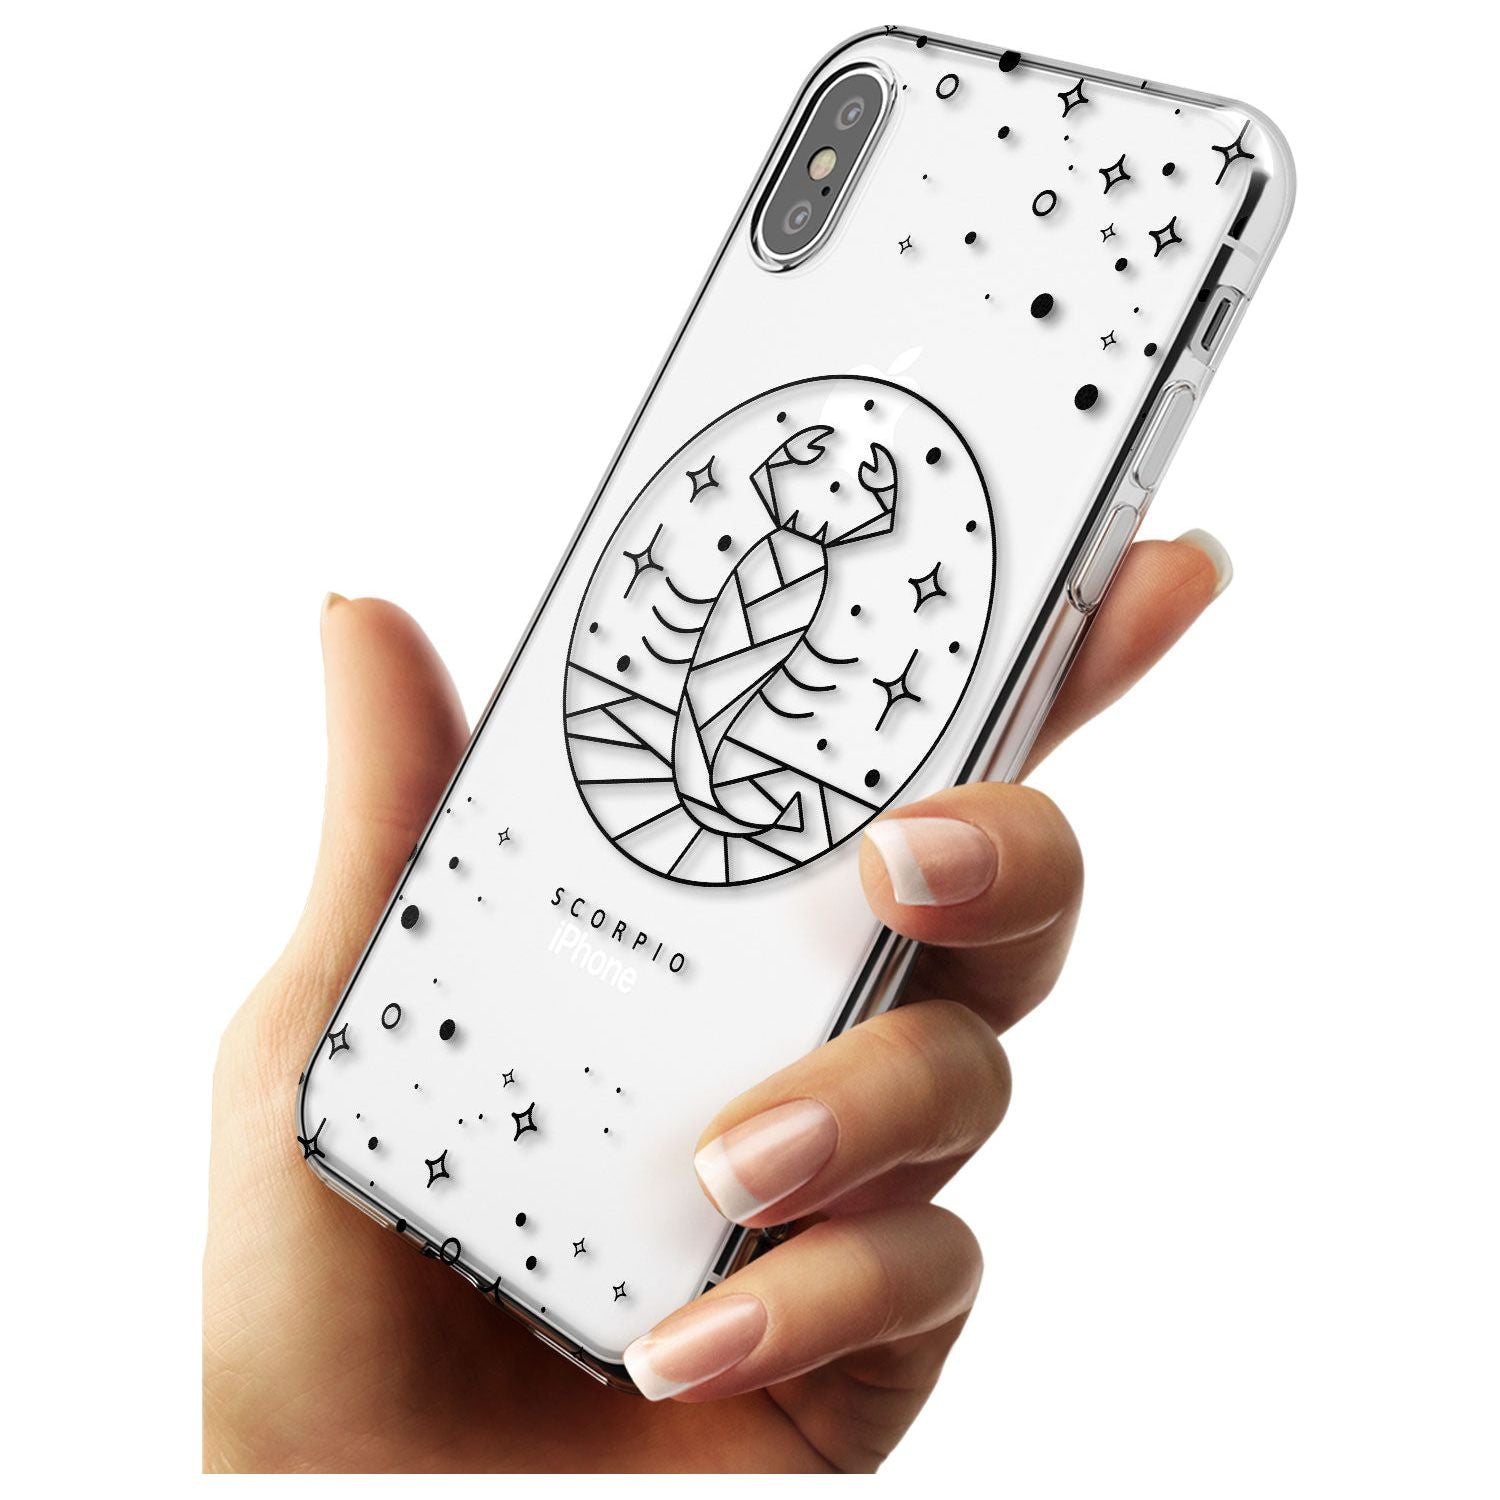 Scorpio Emblem - Transparent Design Slim TPU Phone Case Warehouse X XS Max XR